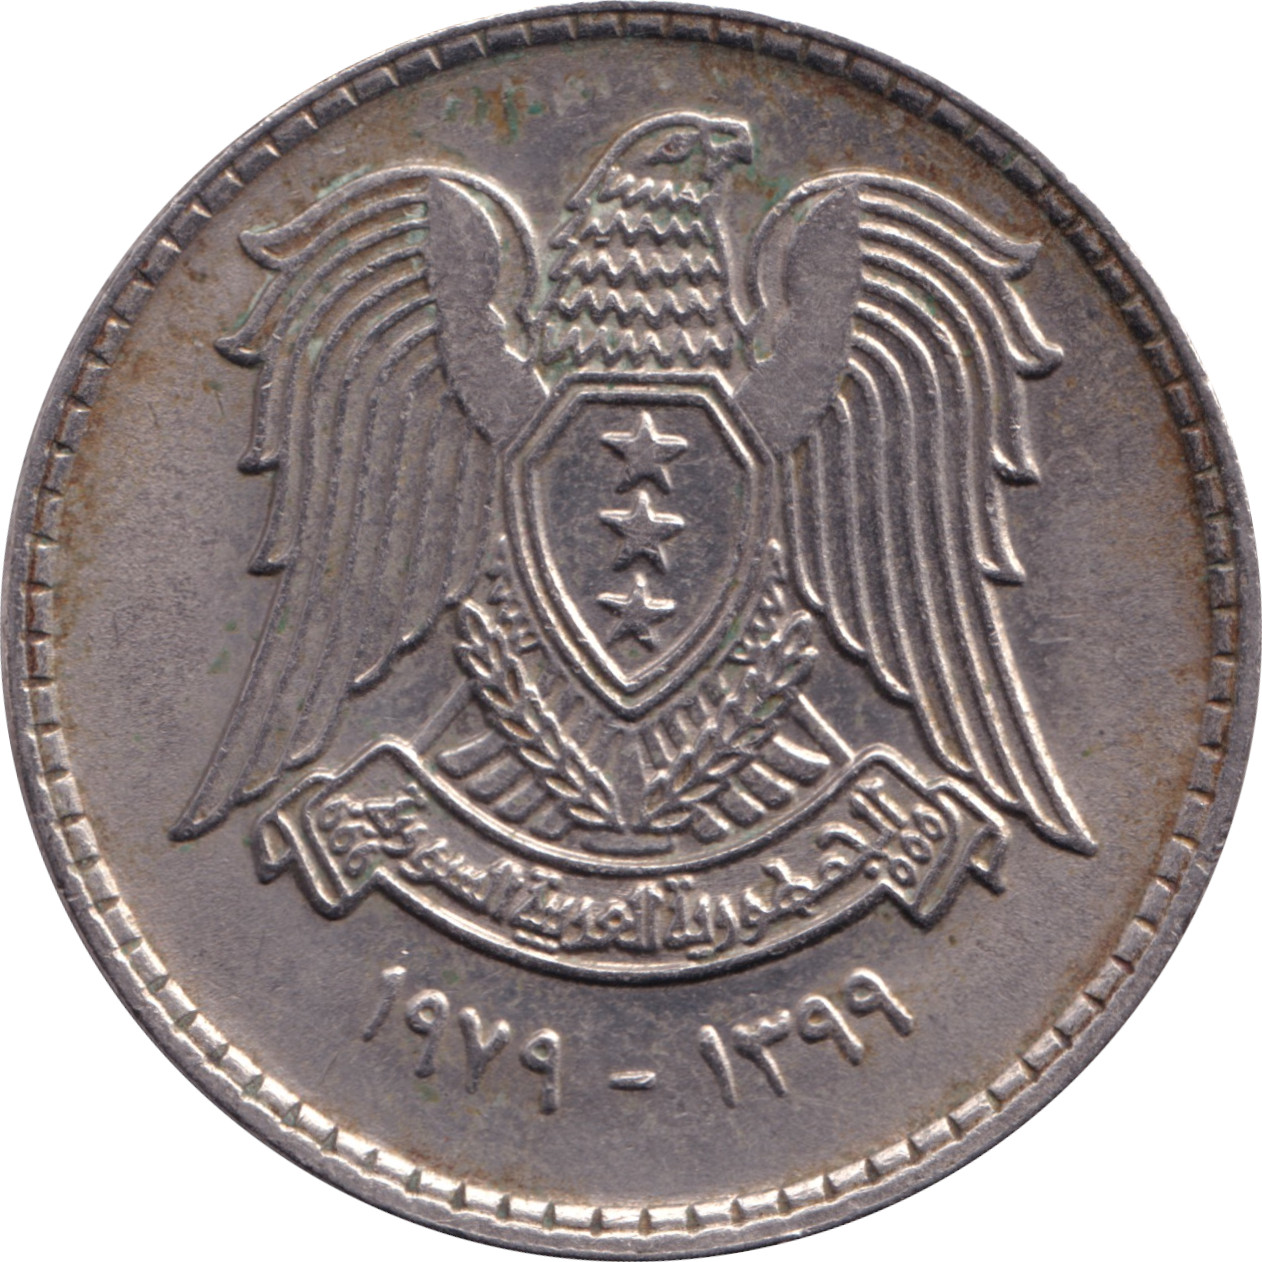 1 pound - République arabe - Type 3